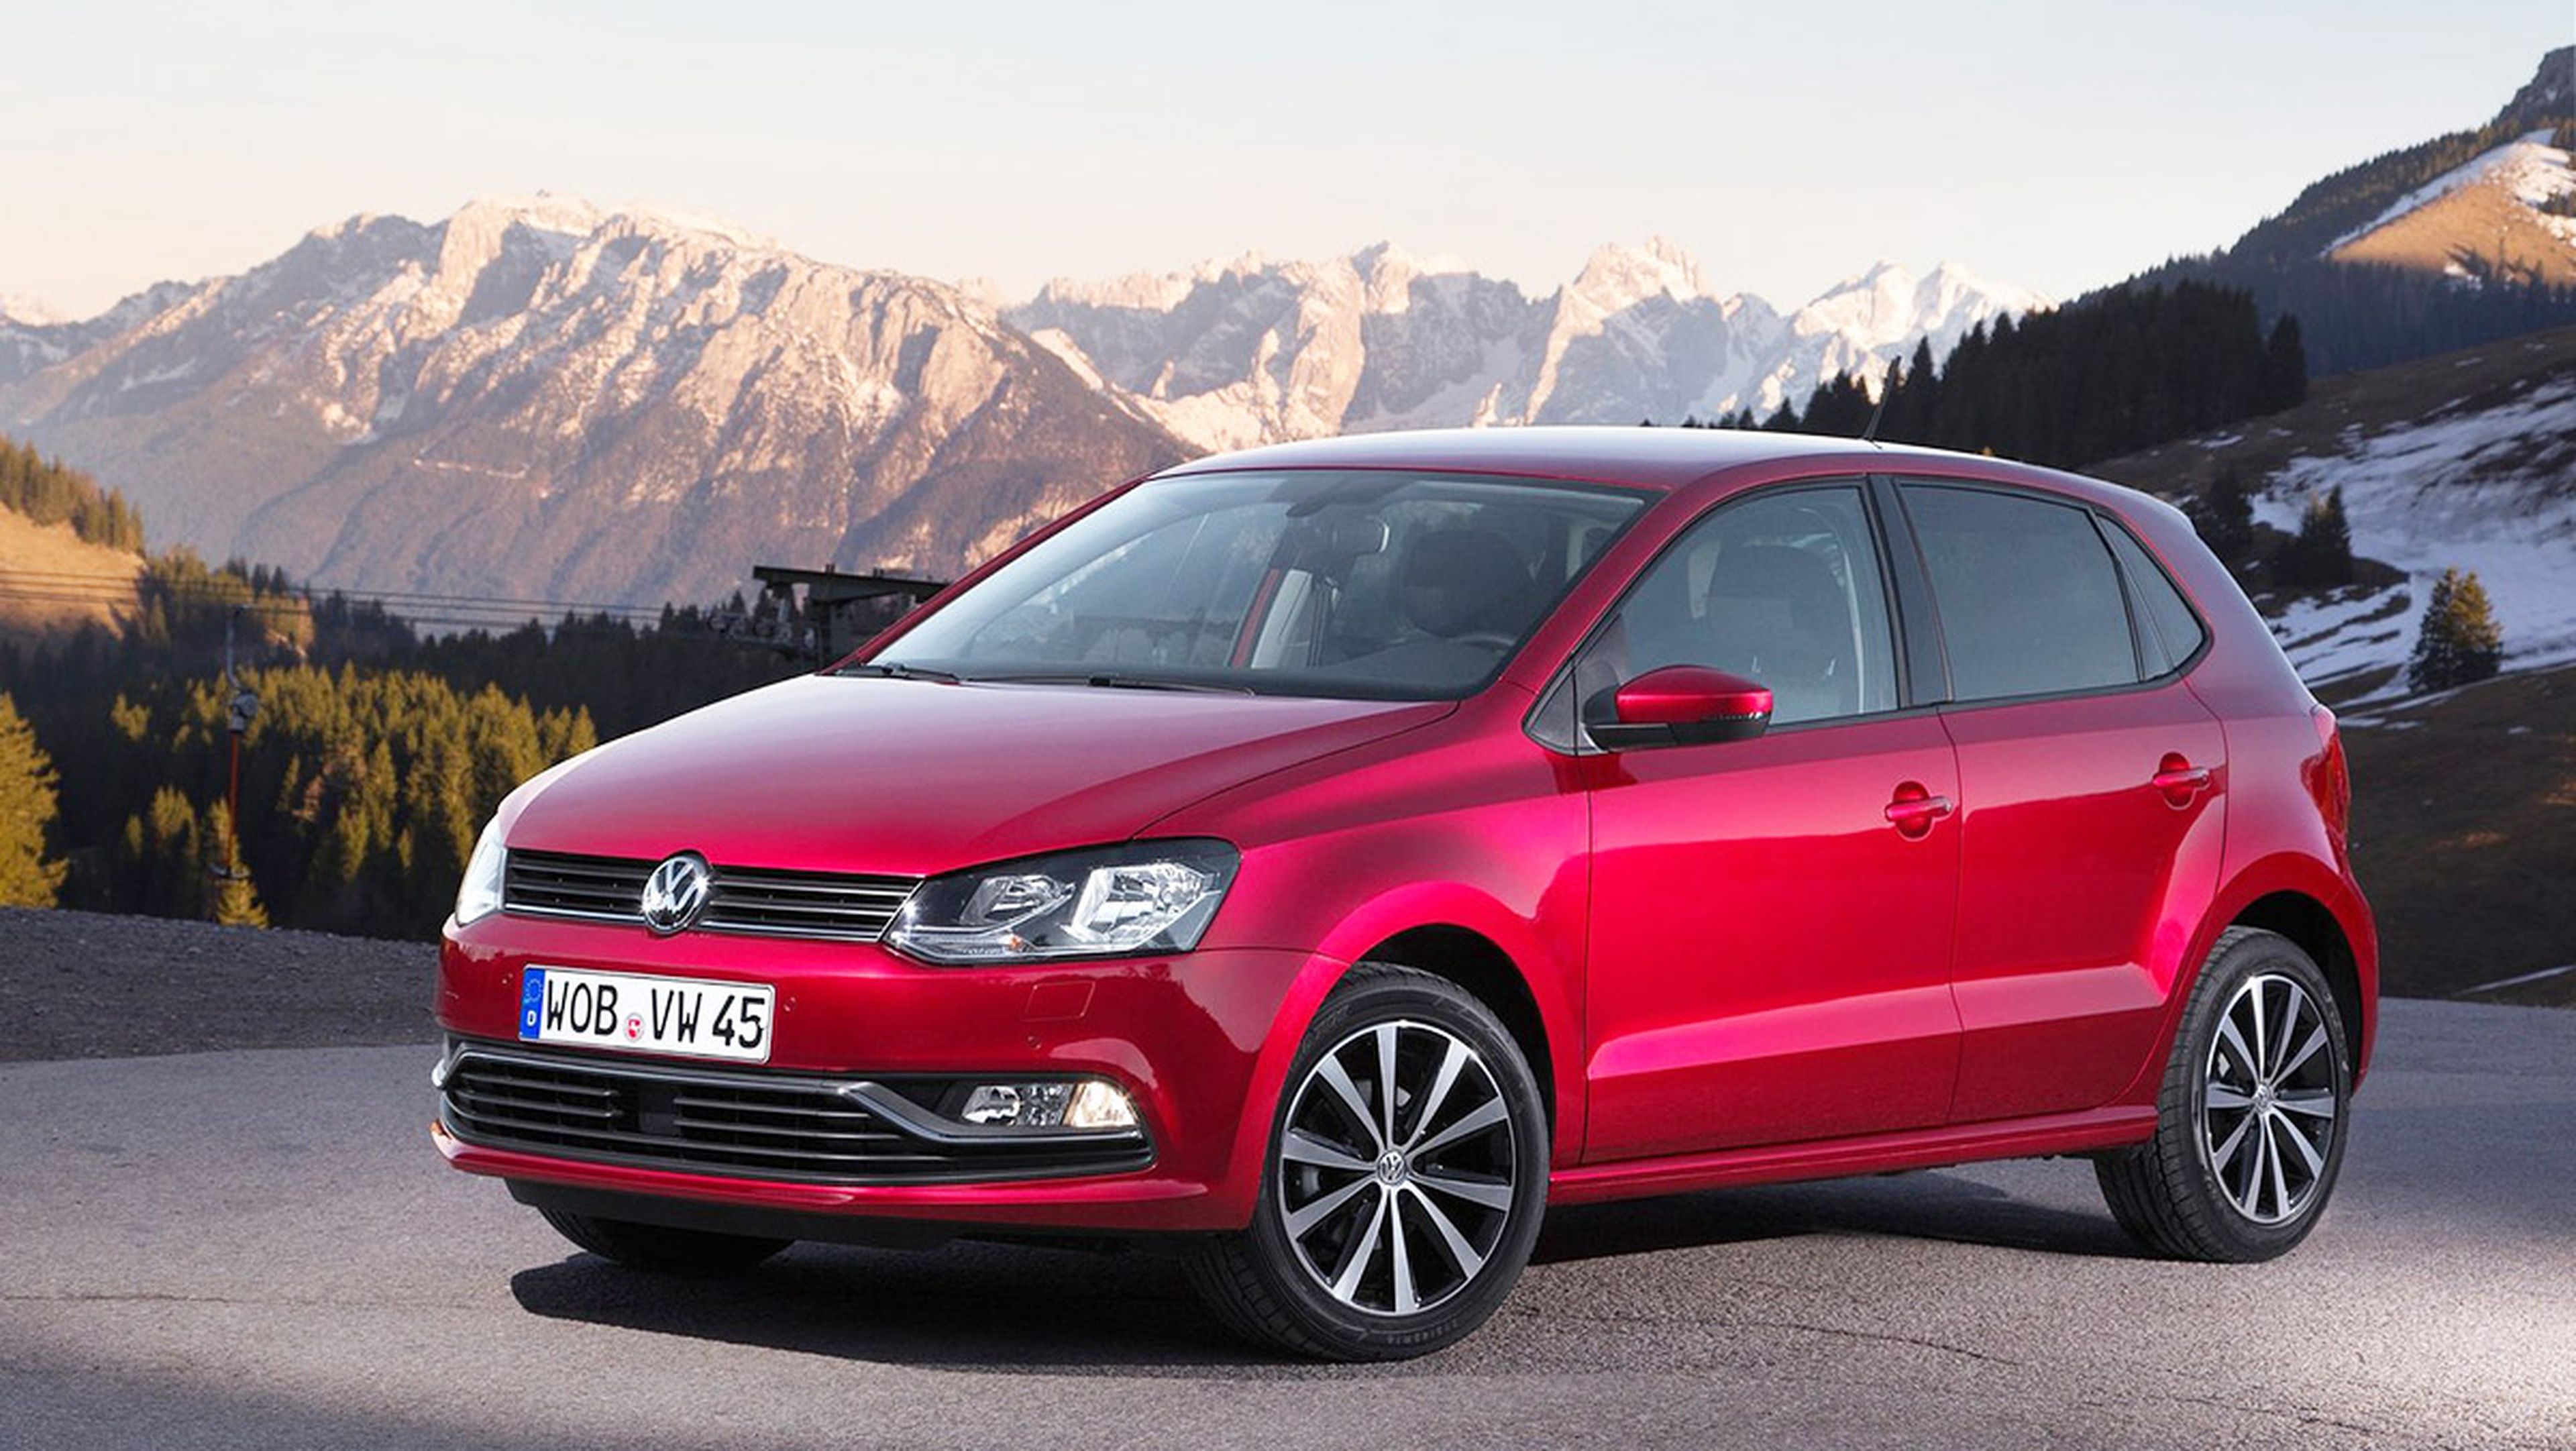 Coches nuevos entre 15.000 y 18.000 euros - Volkswagen Polo